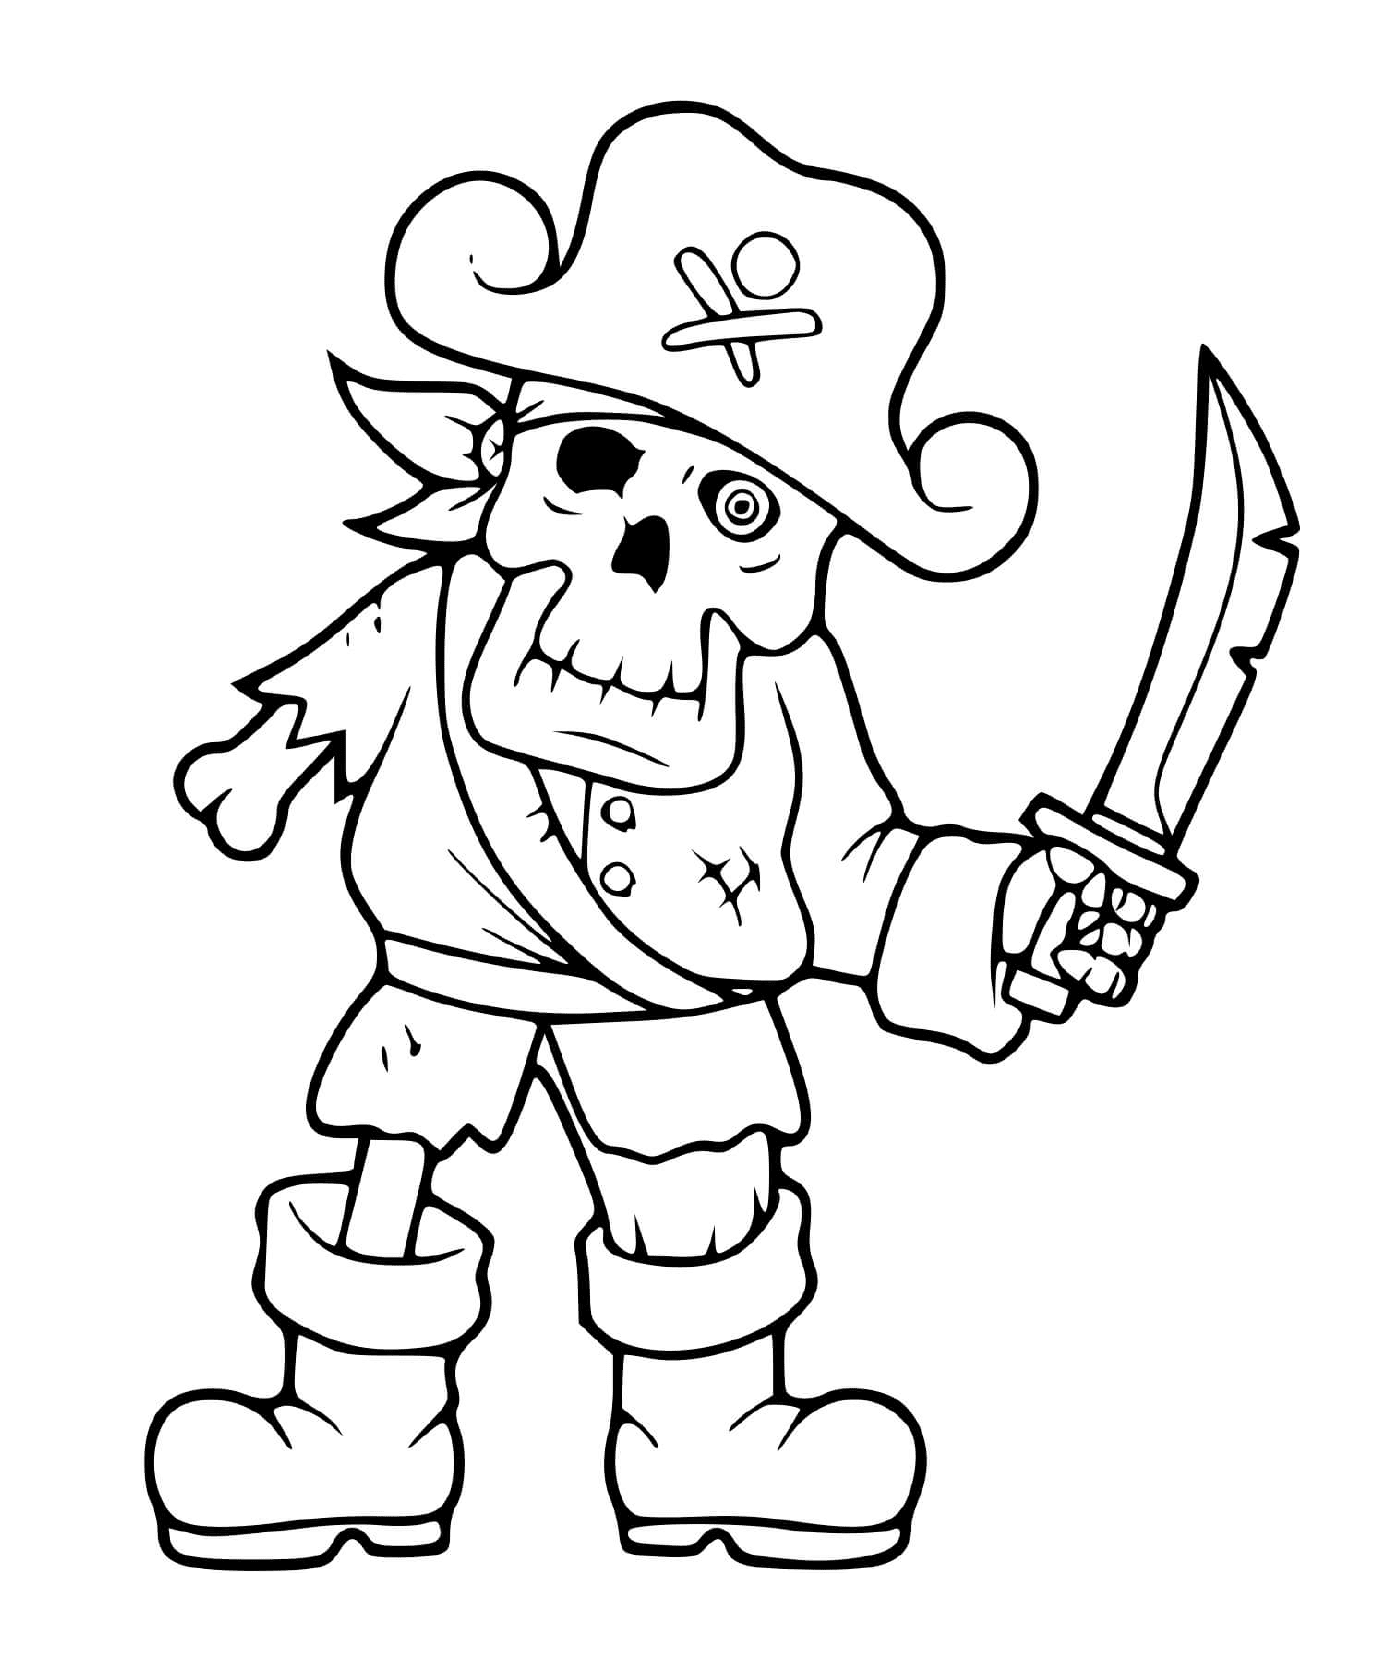  Spaventoso scheletro pirata 